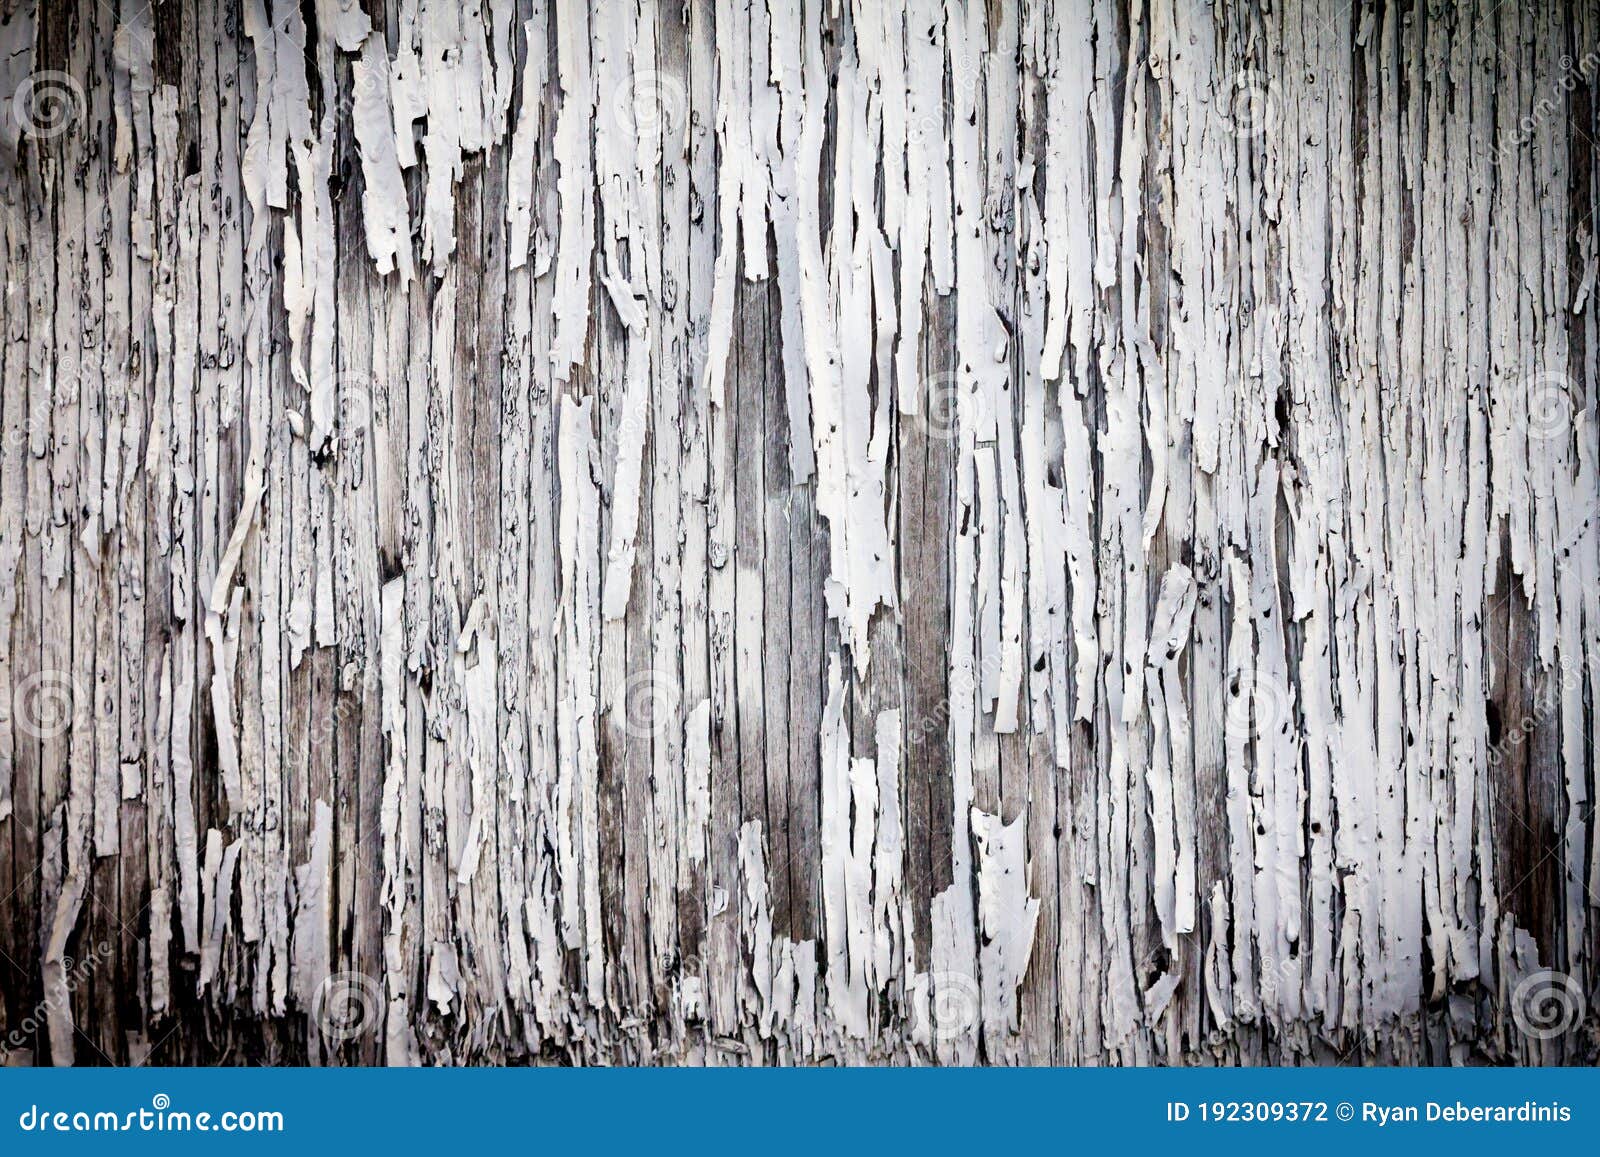 Una pared de madera con pintura blanca que tiene una textura de madera.